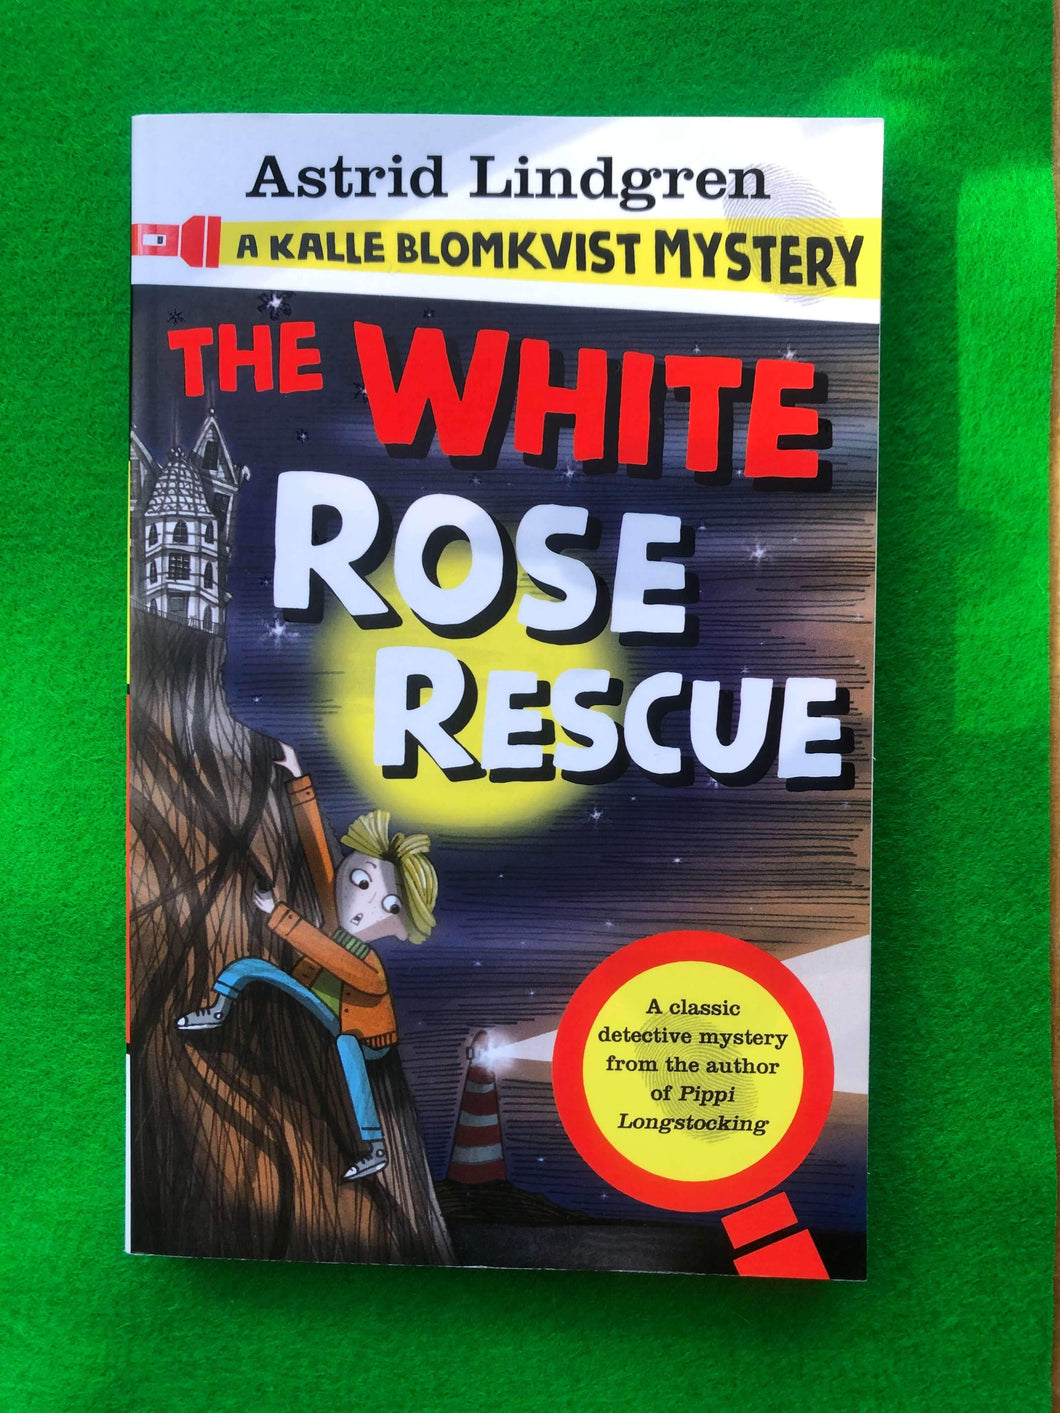 Astrid Lindgren - A Kalle Blomkvist Mystery: The White Rose Rescue